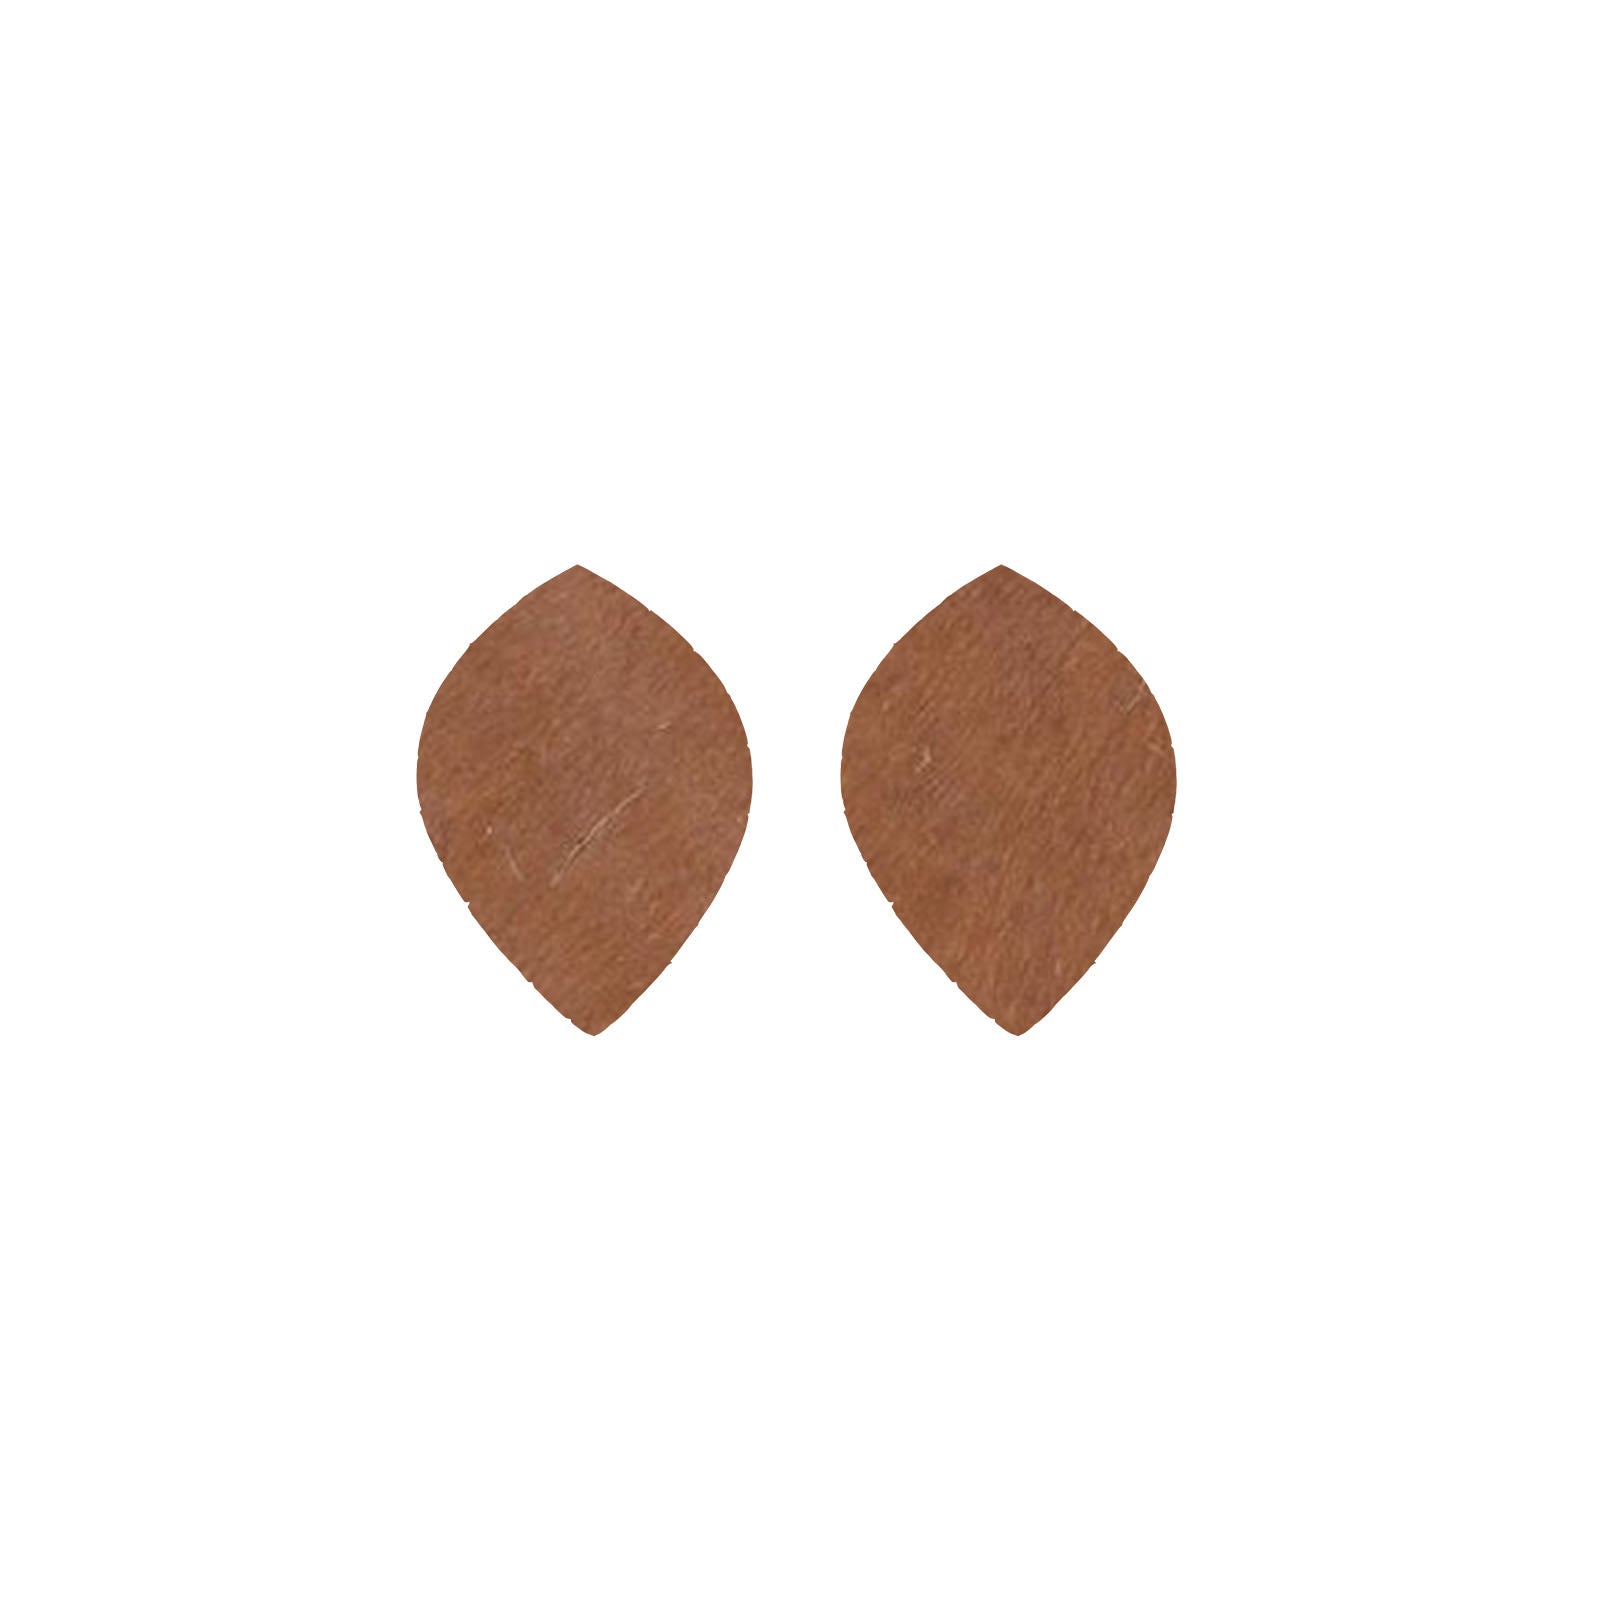 Solid Medium Brown Hair On Die Cut Earrings, Small Leaf | The Leather Guy